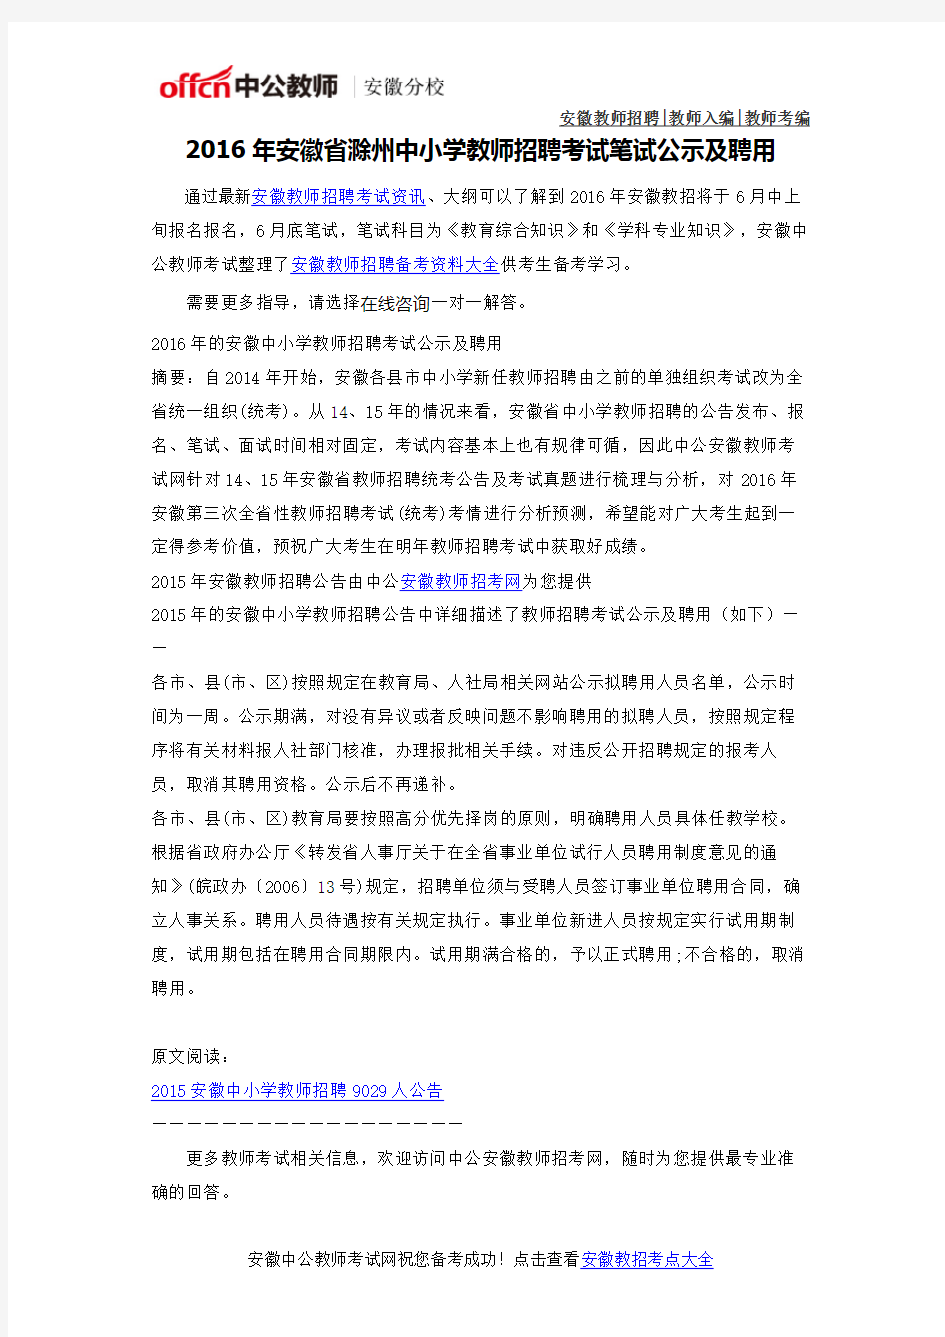 2016年安徽省滁州中小学教师考编考试公示及聘用